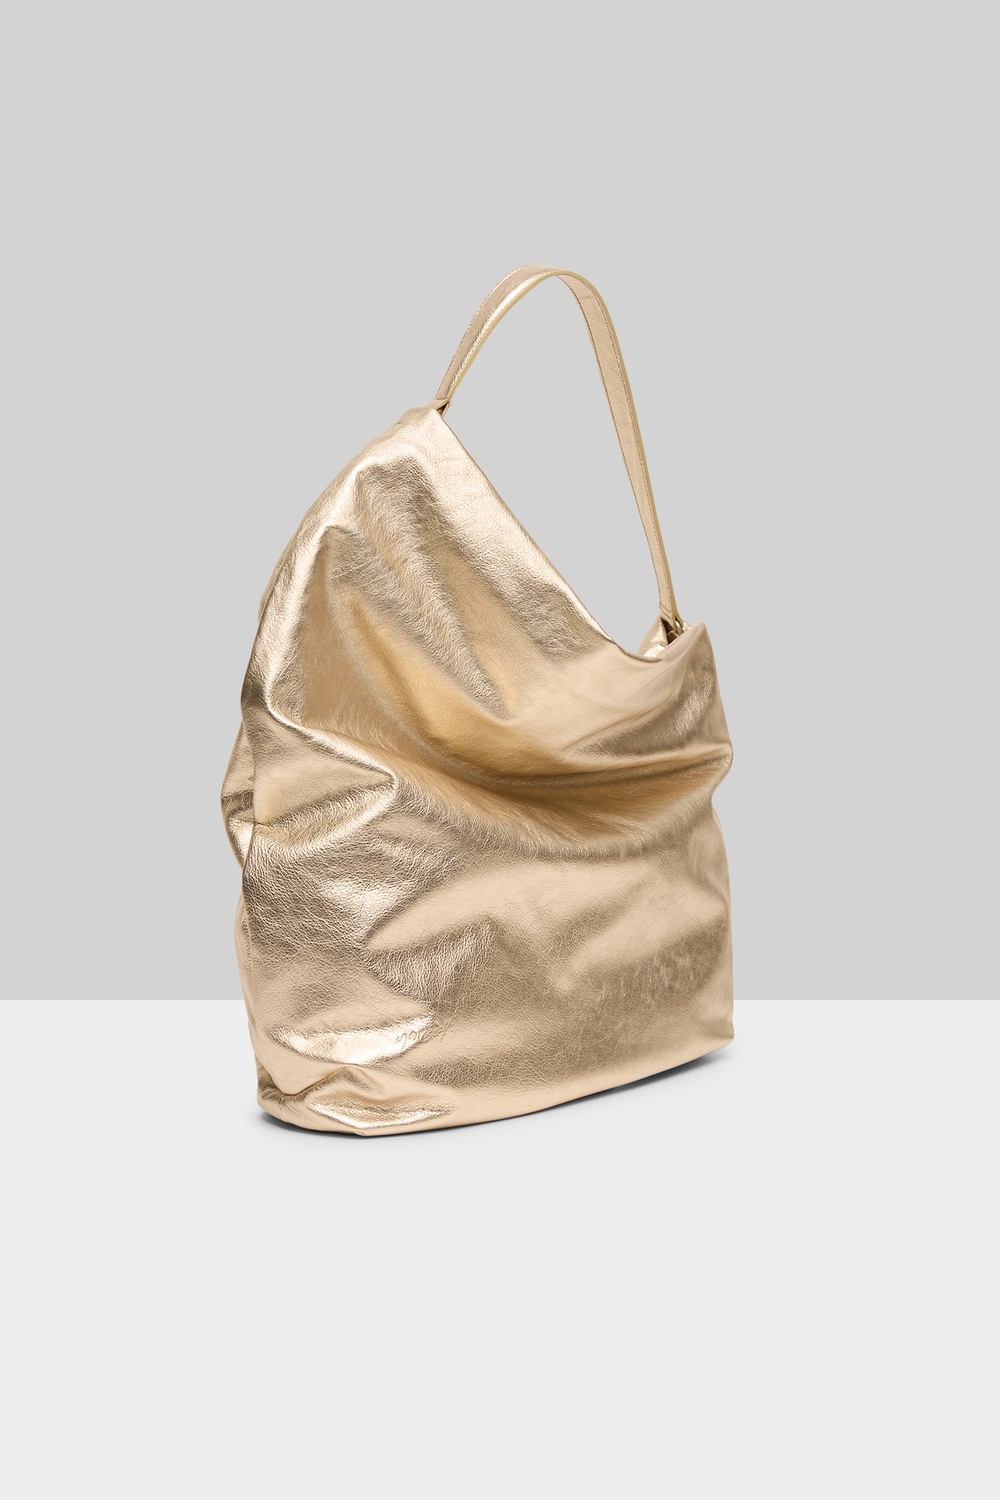 Fanta Lunga Shoulder Bag Platinum Foil hover